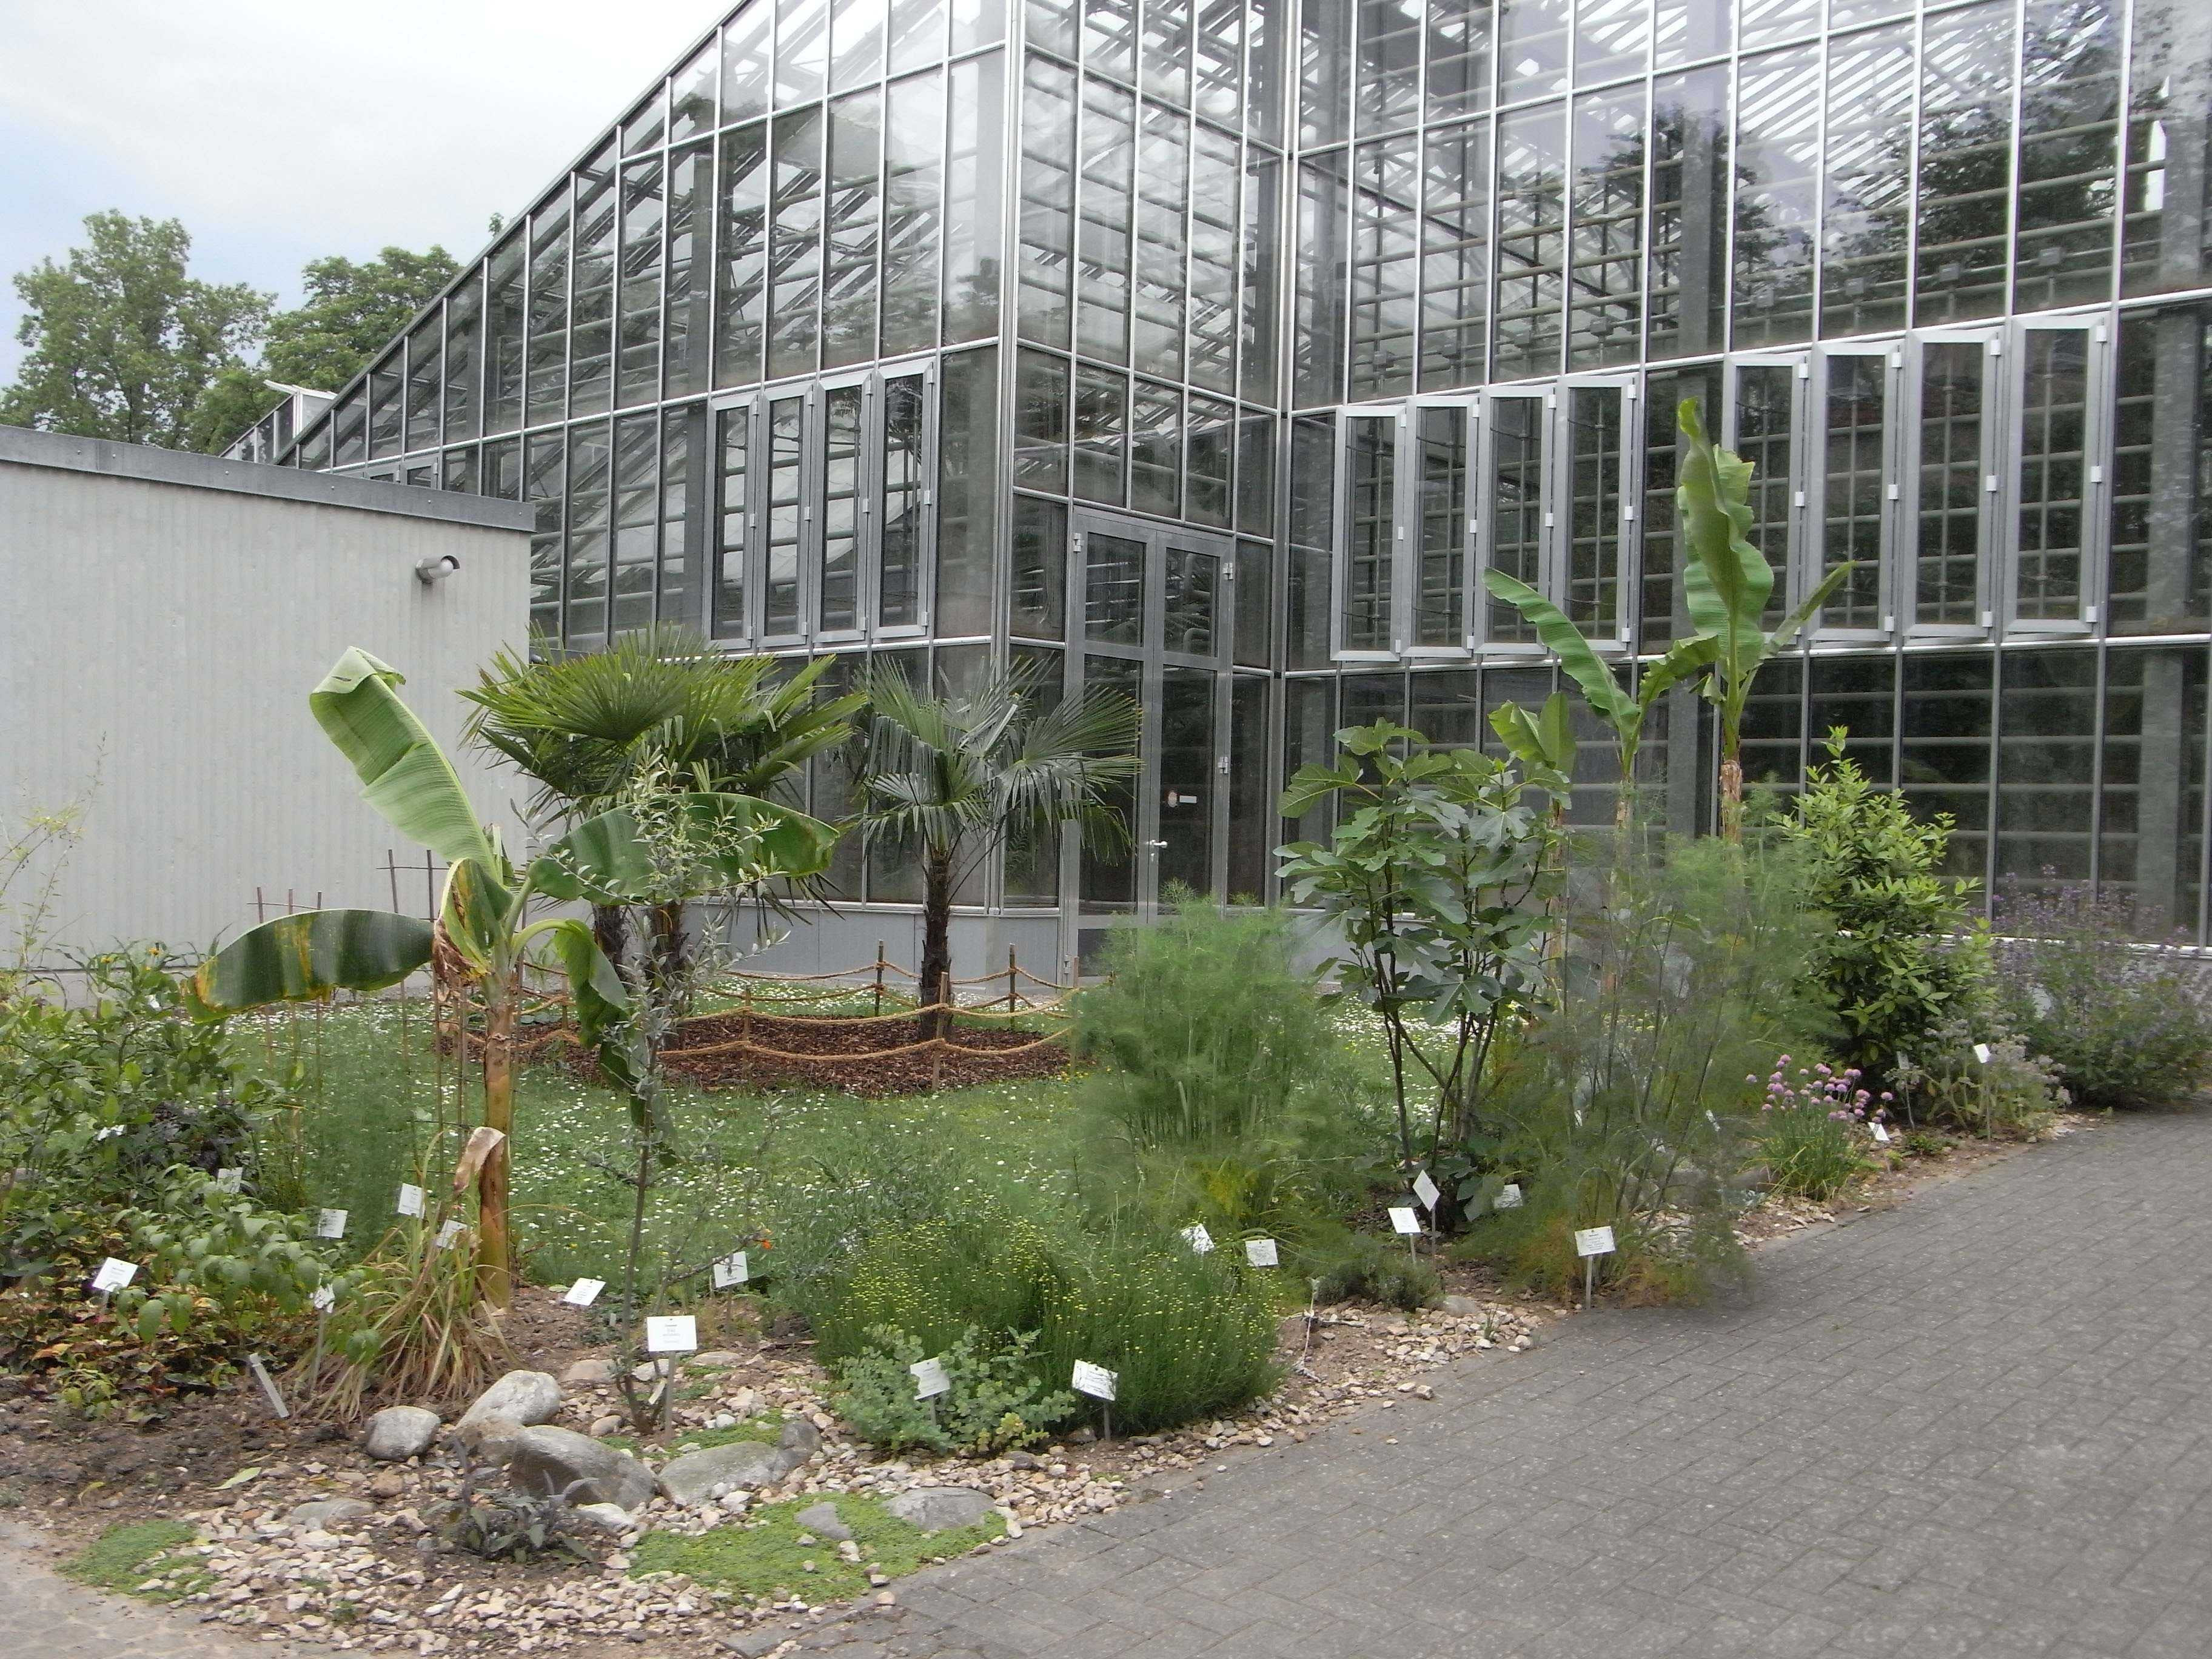 Botanischer Garten Freiburg
 Nutzpflanzen im Botanischen Garten Freiburg — Botanischer